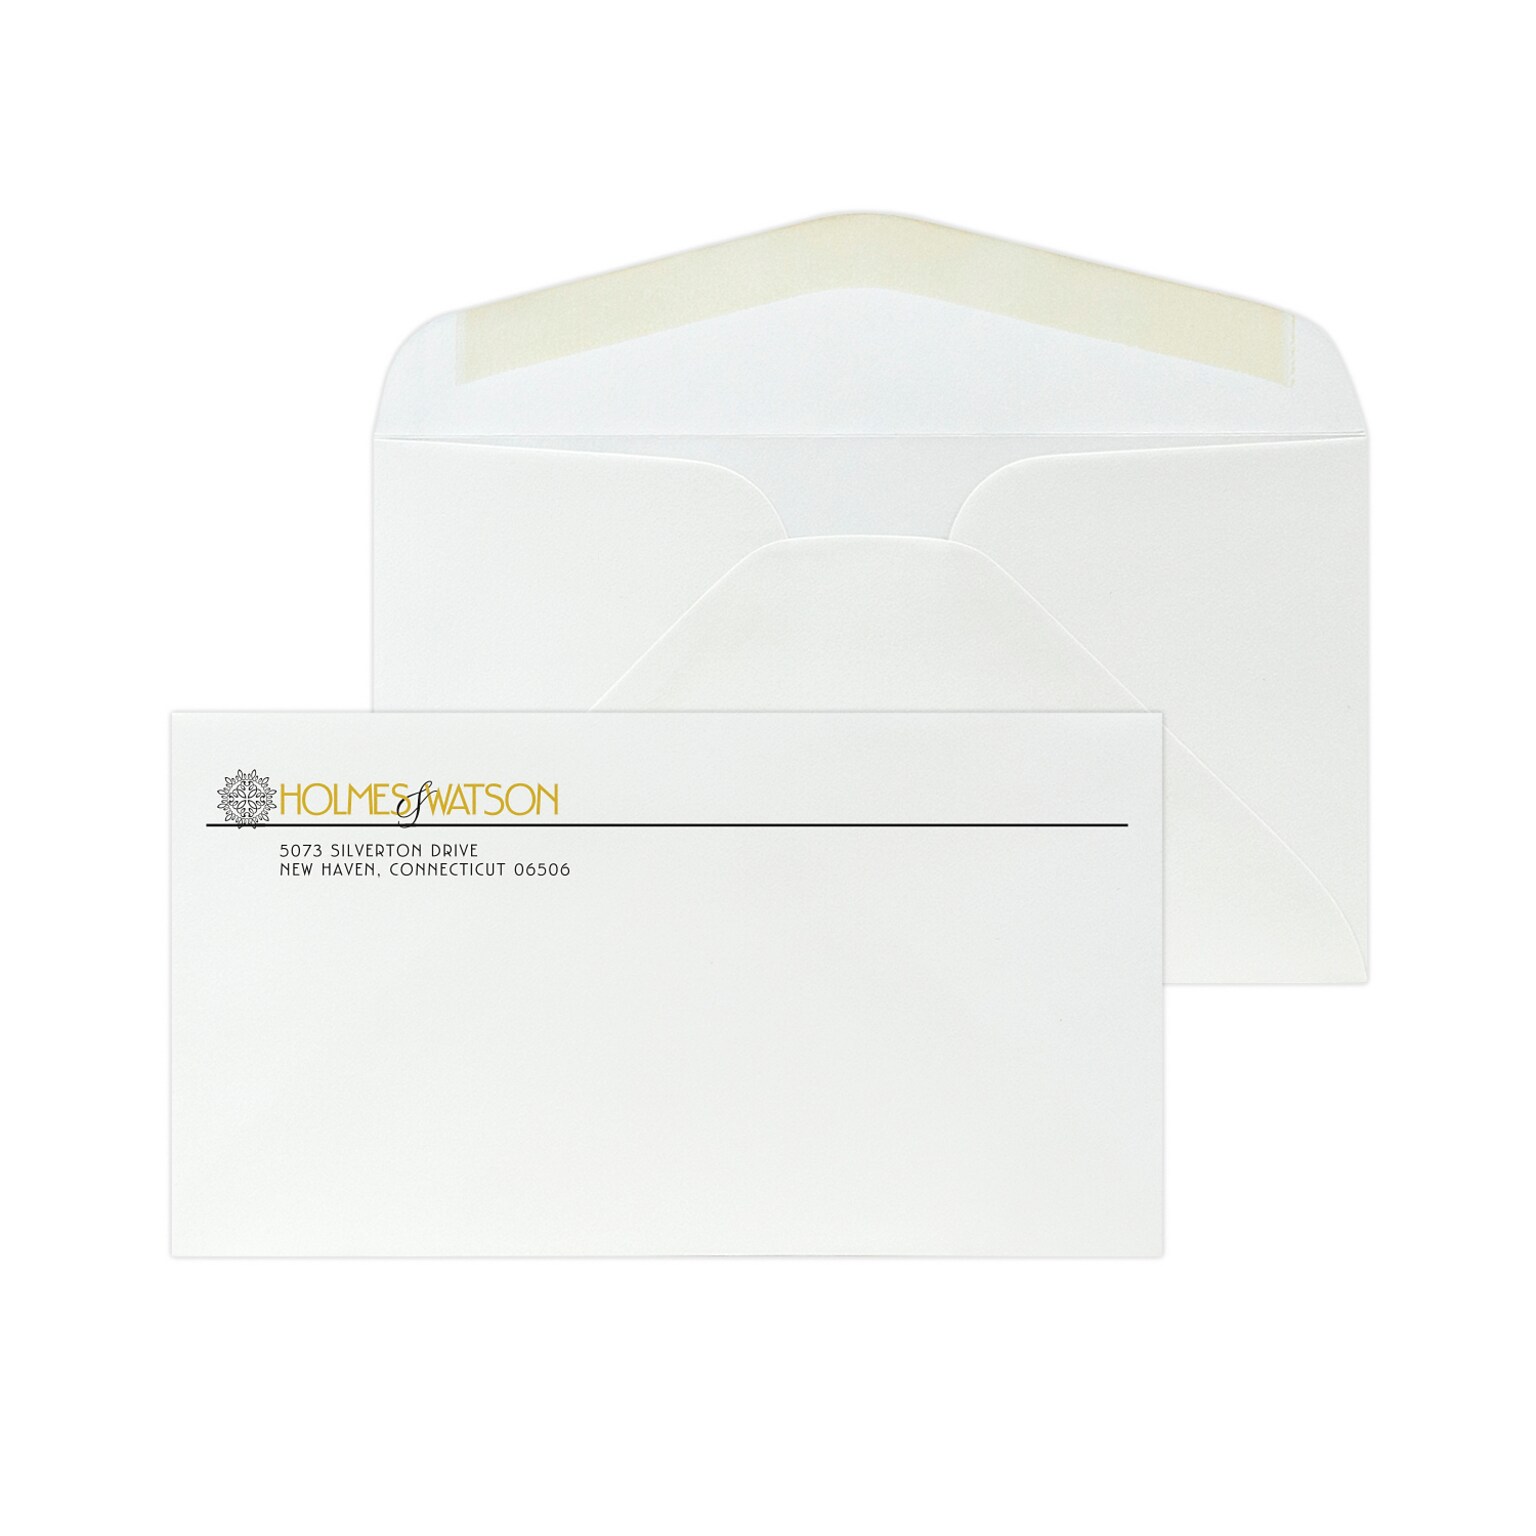 Custom #6-3/4 Standard Envelopes, 3 5/8 x 6 1/2, 24# White 25% Cotton Bond, 1 Standard and 1 Custom Inks, 250 / Pack